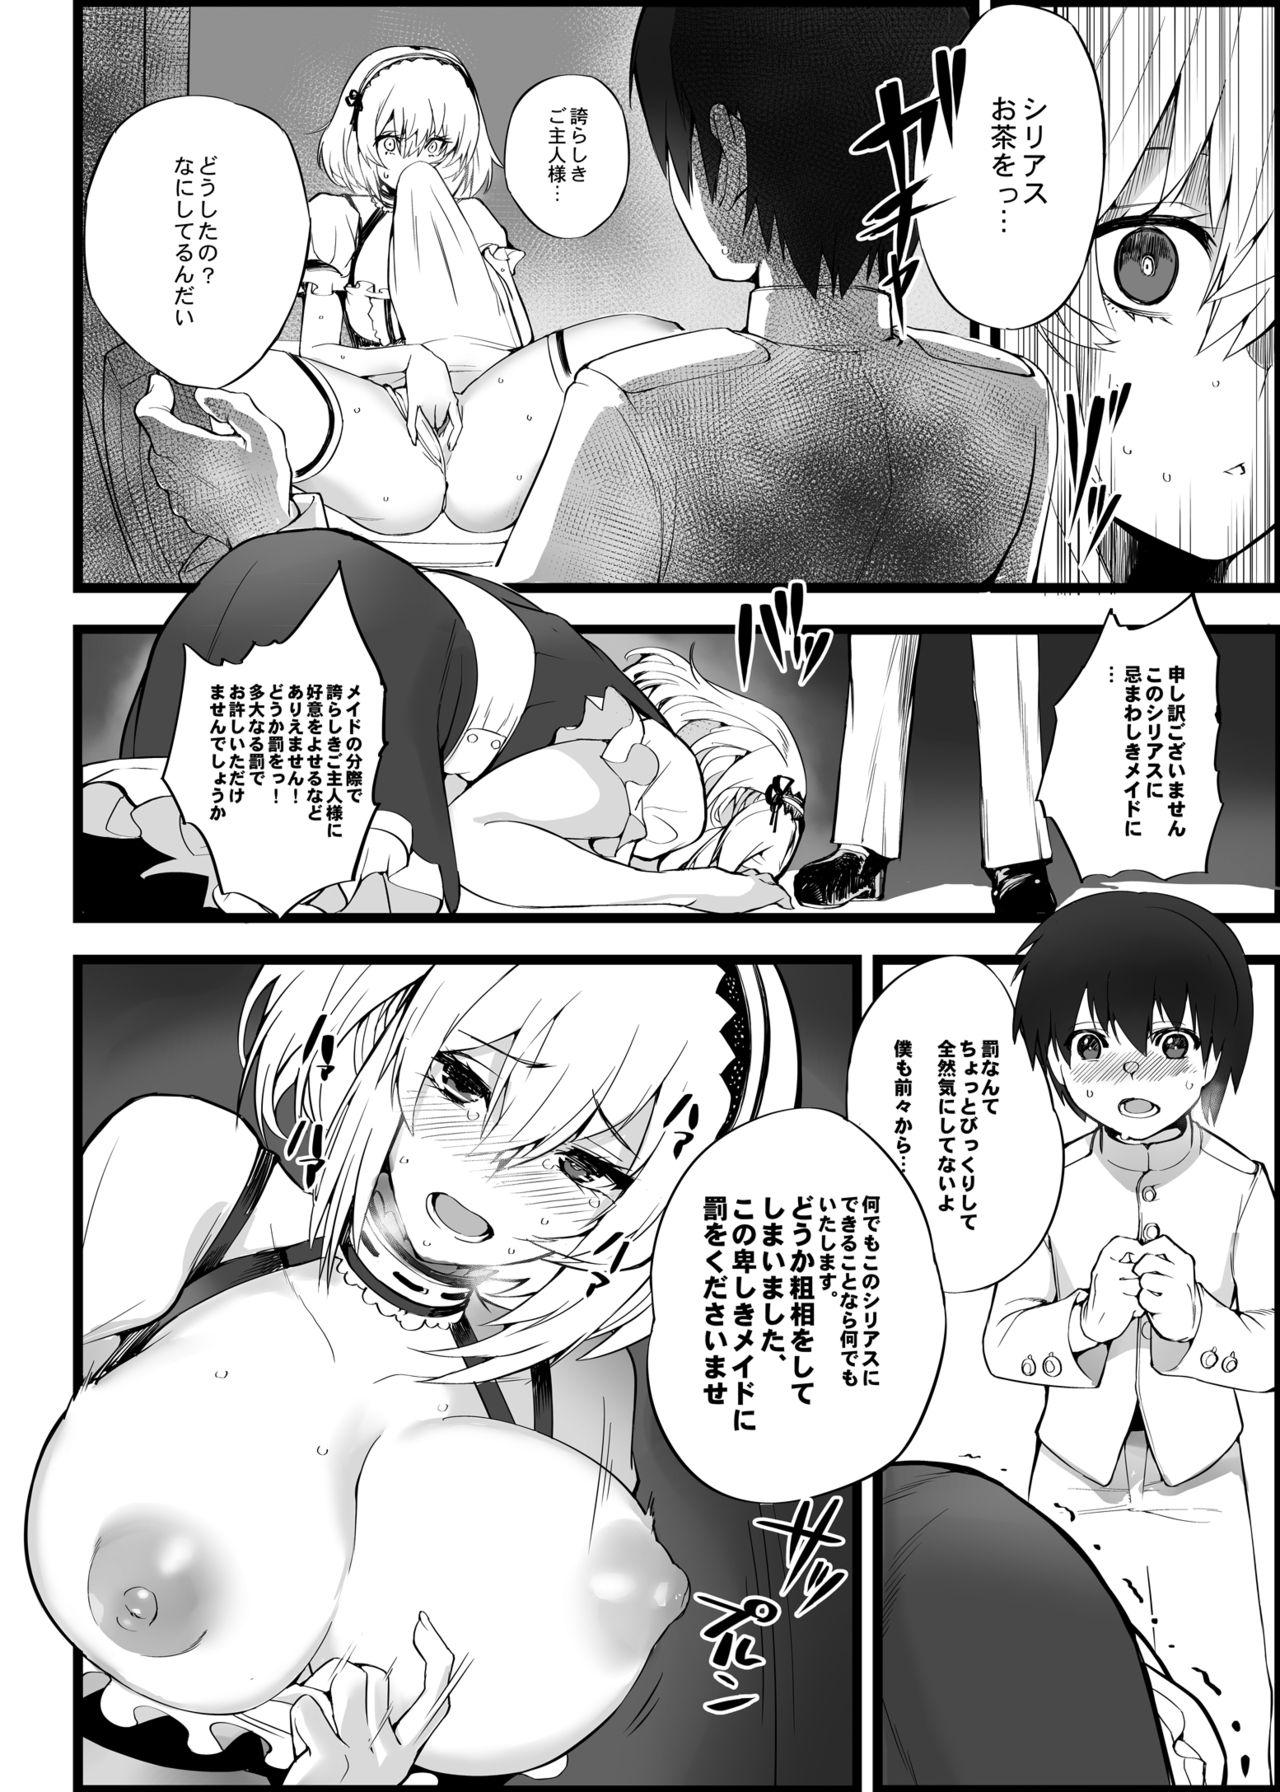 Futanari Mukakin Shirei ni Yubiwa o Kawaseru Saigo no Houhou 5 - Azur lane Doggy Style Porn - Page 5